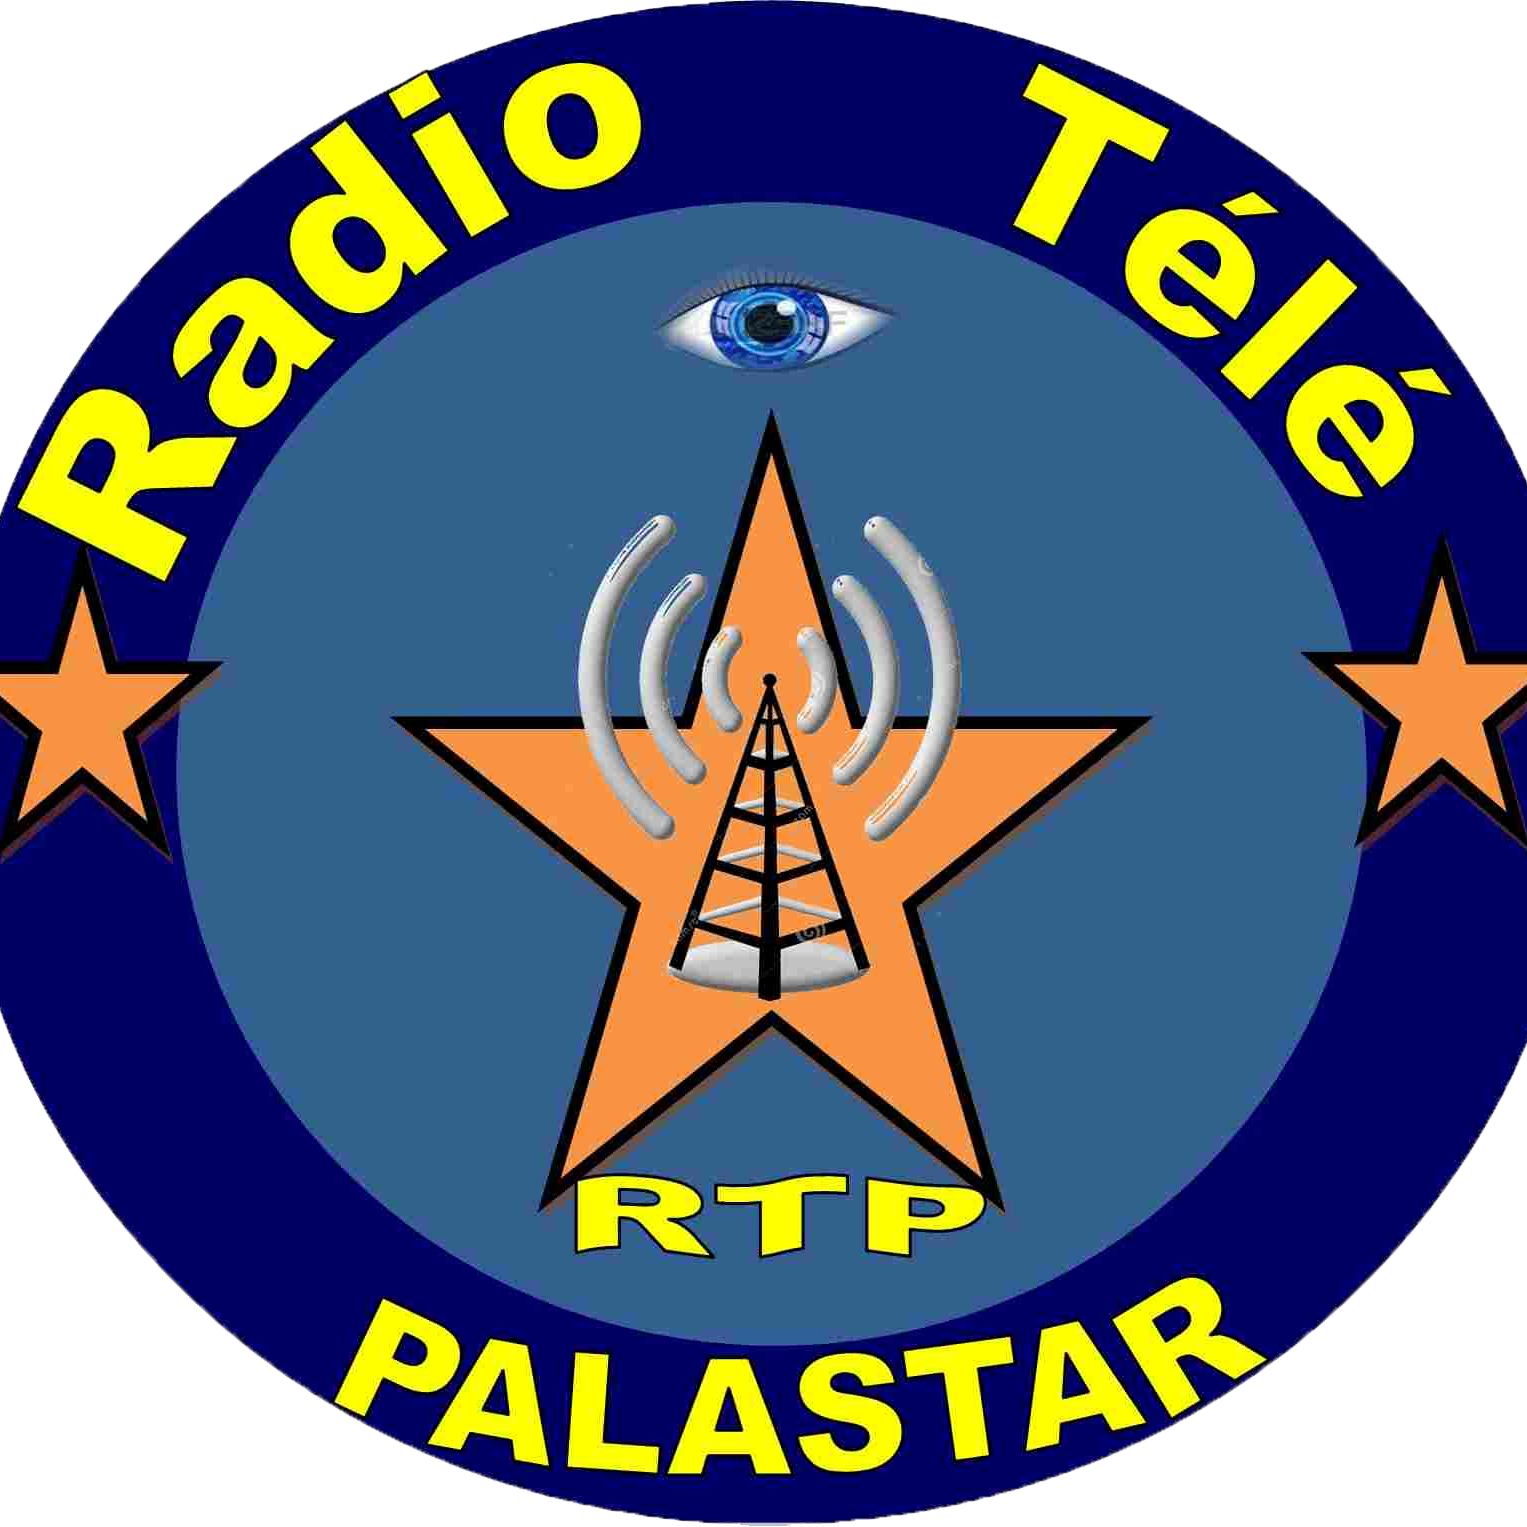 Radio Tele Palastar